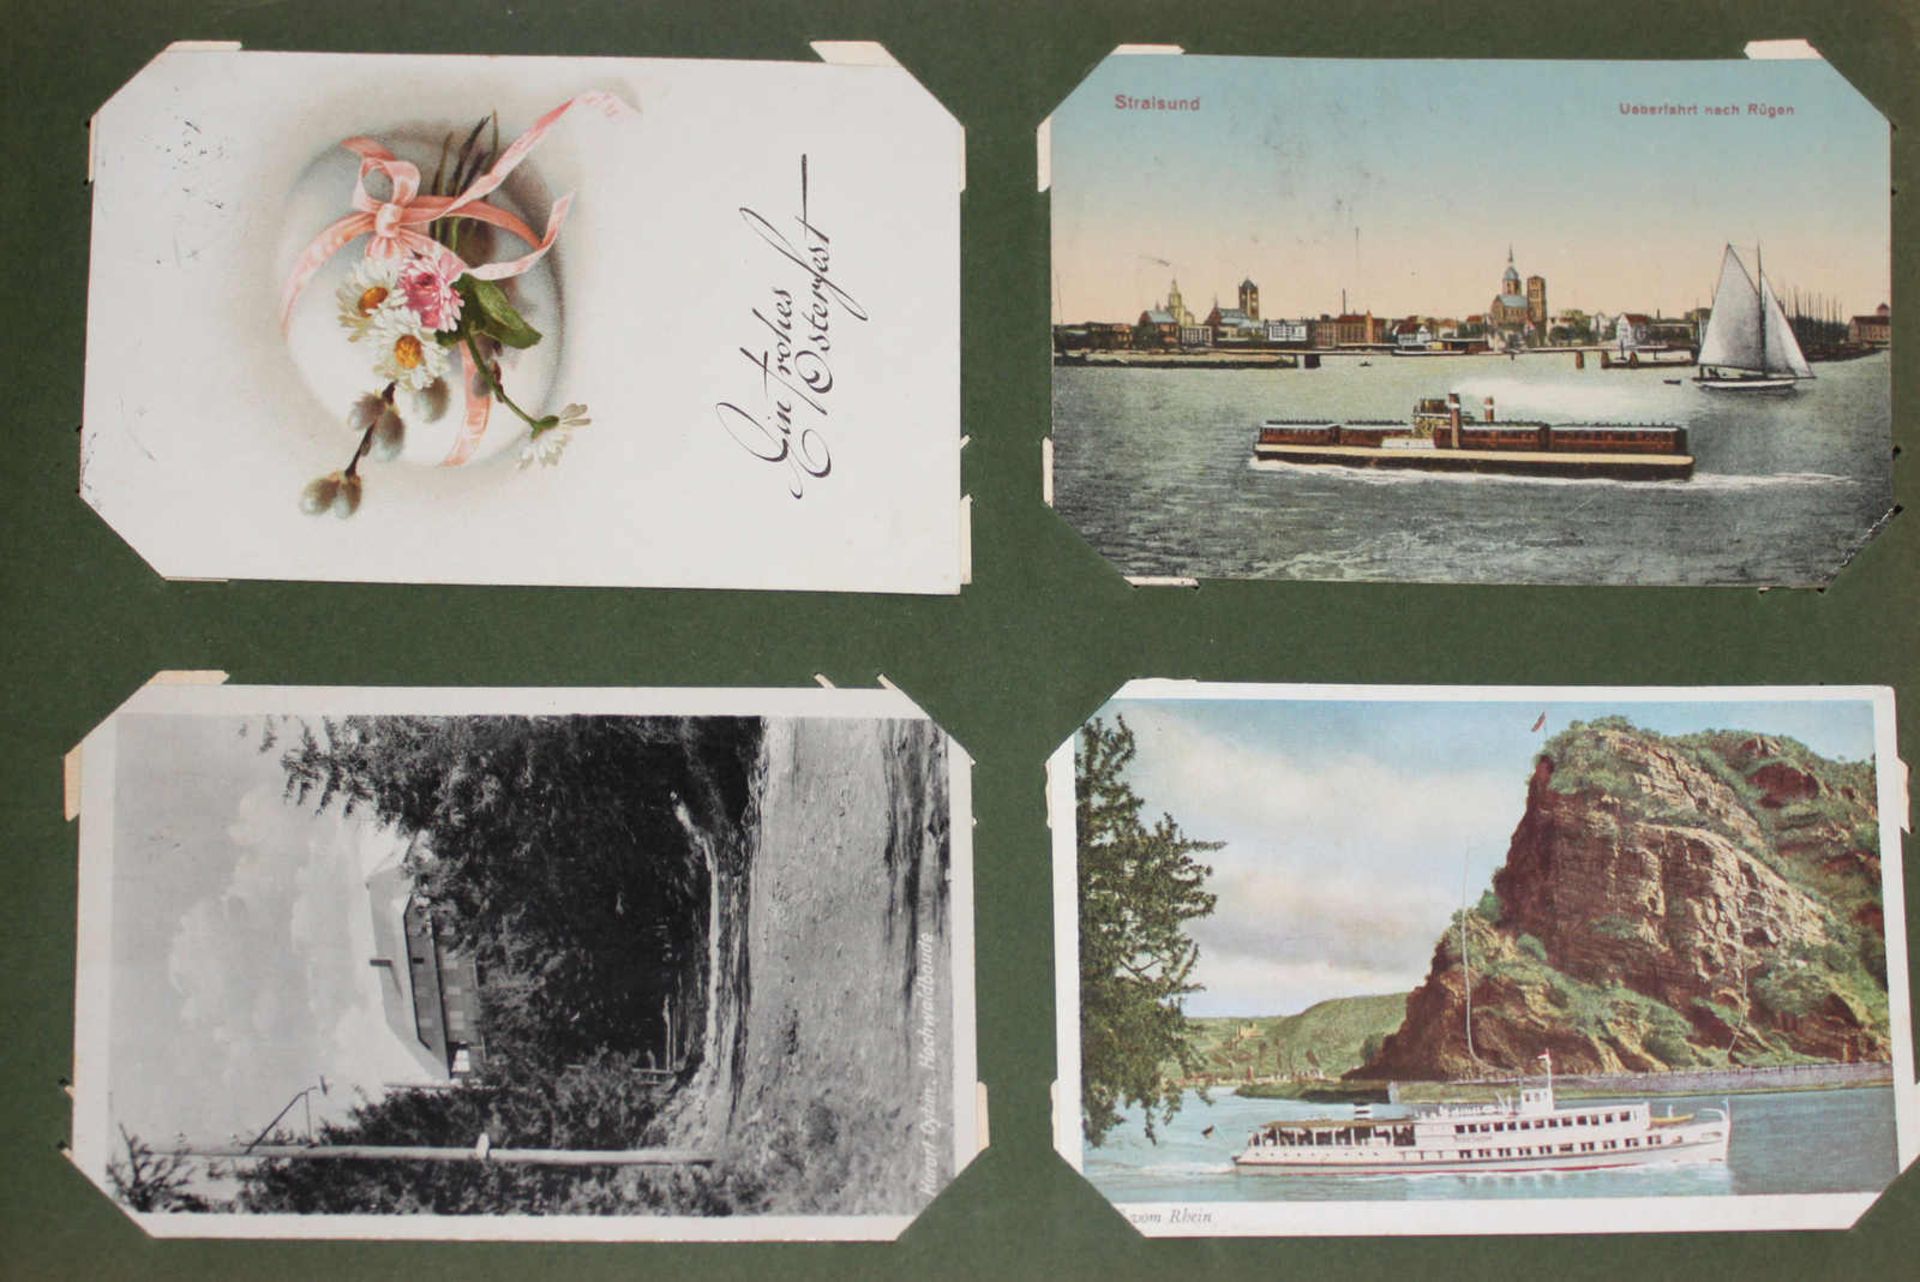 Album Postkarten, etliche aus der Pfalz, über 100 Postkarten viele aus der Pfalz, schönes Lot - Bild 3 aus 3